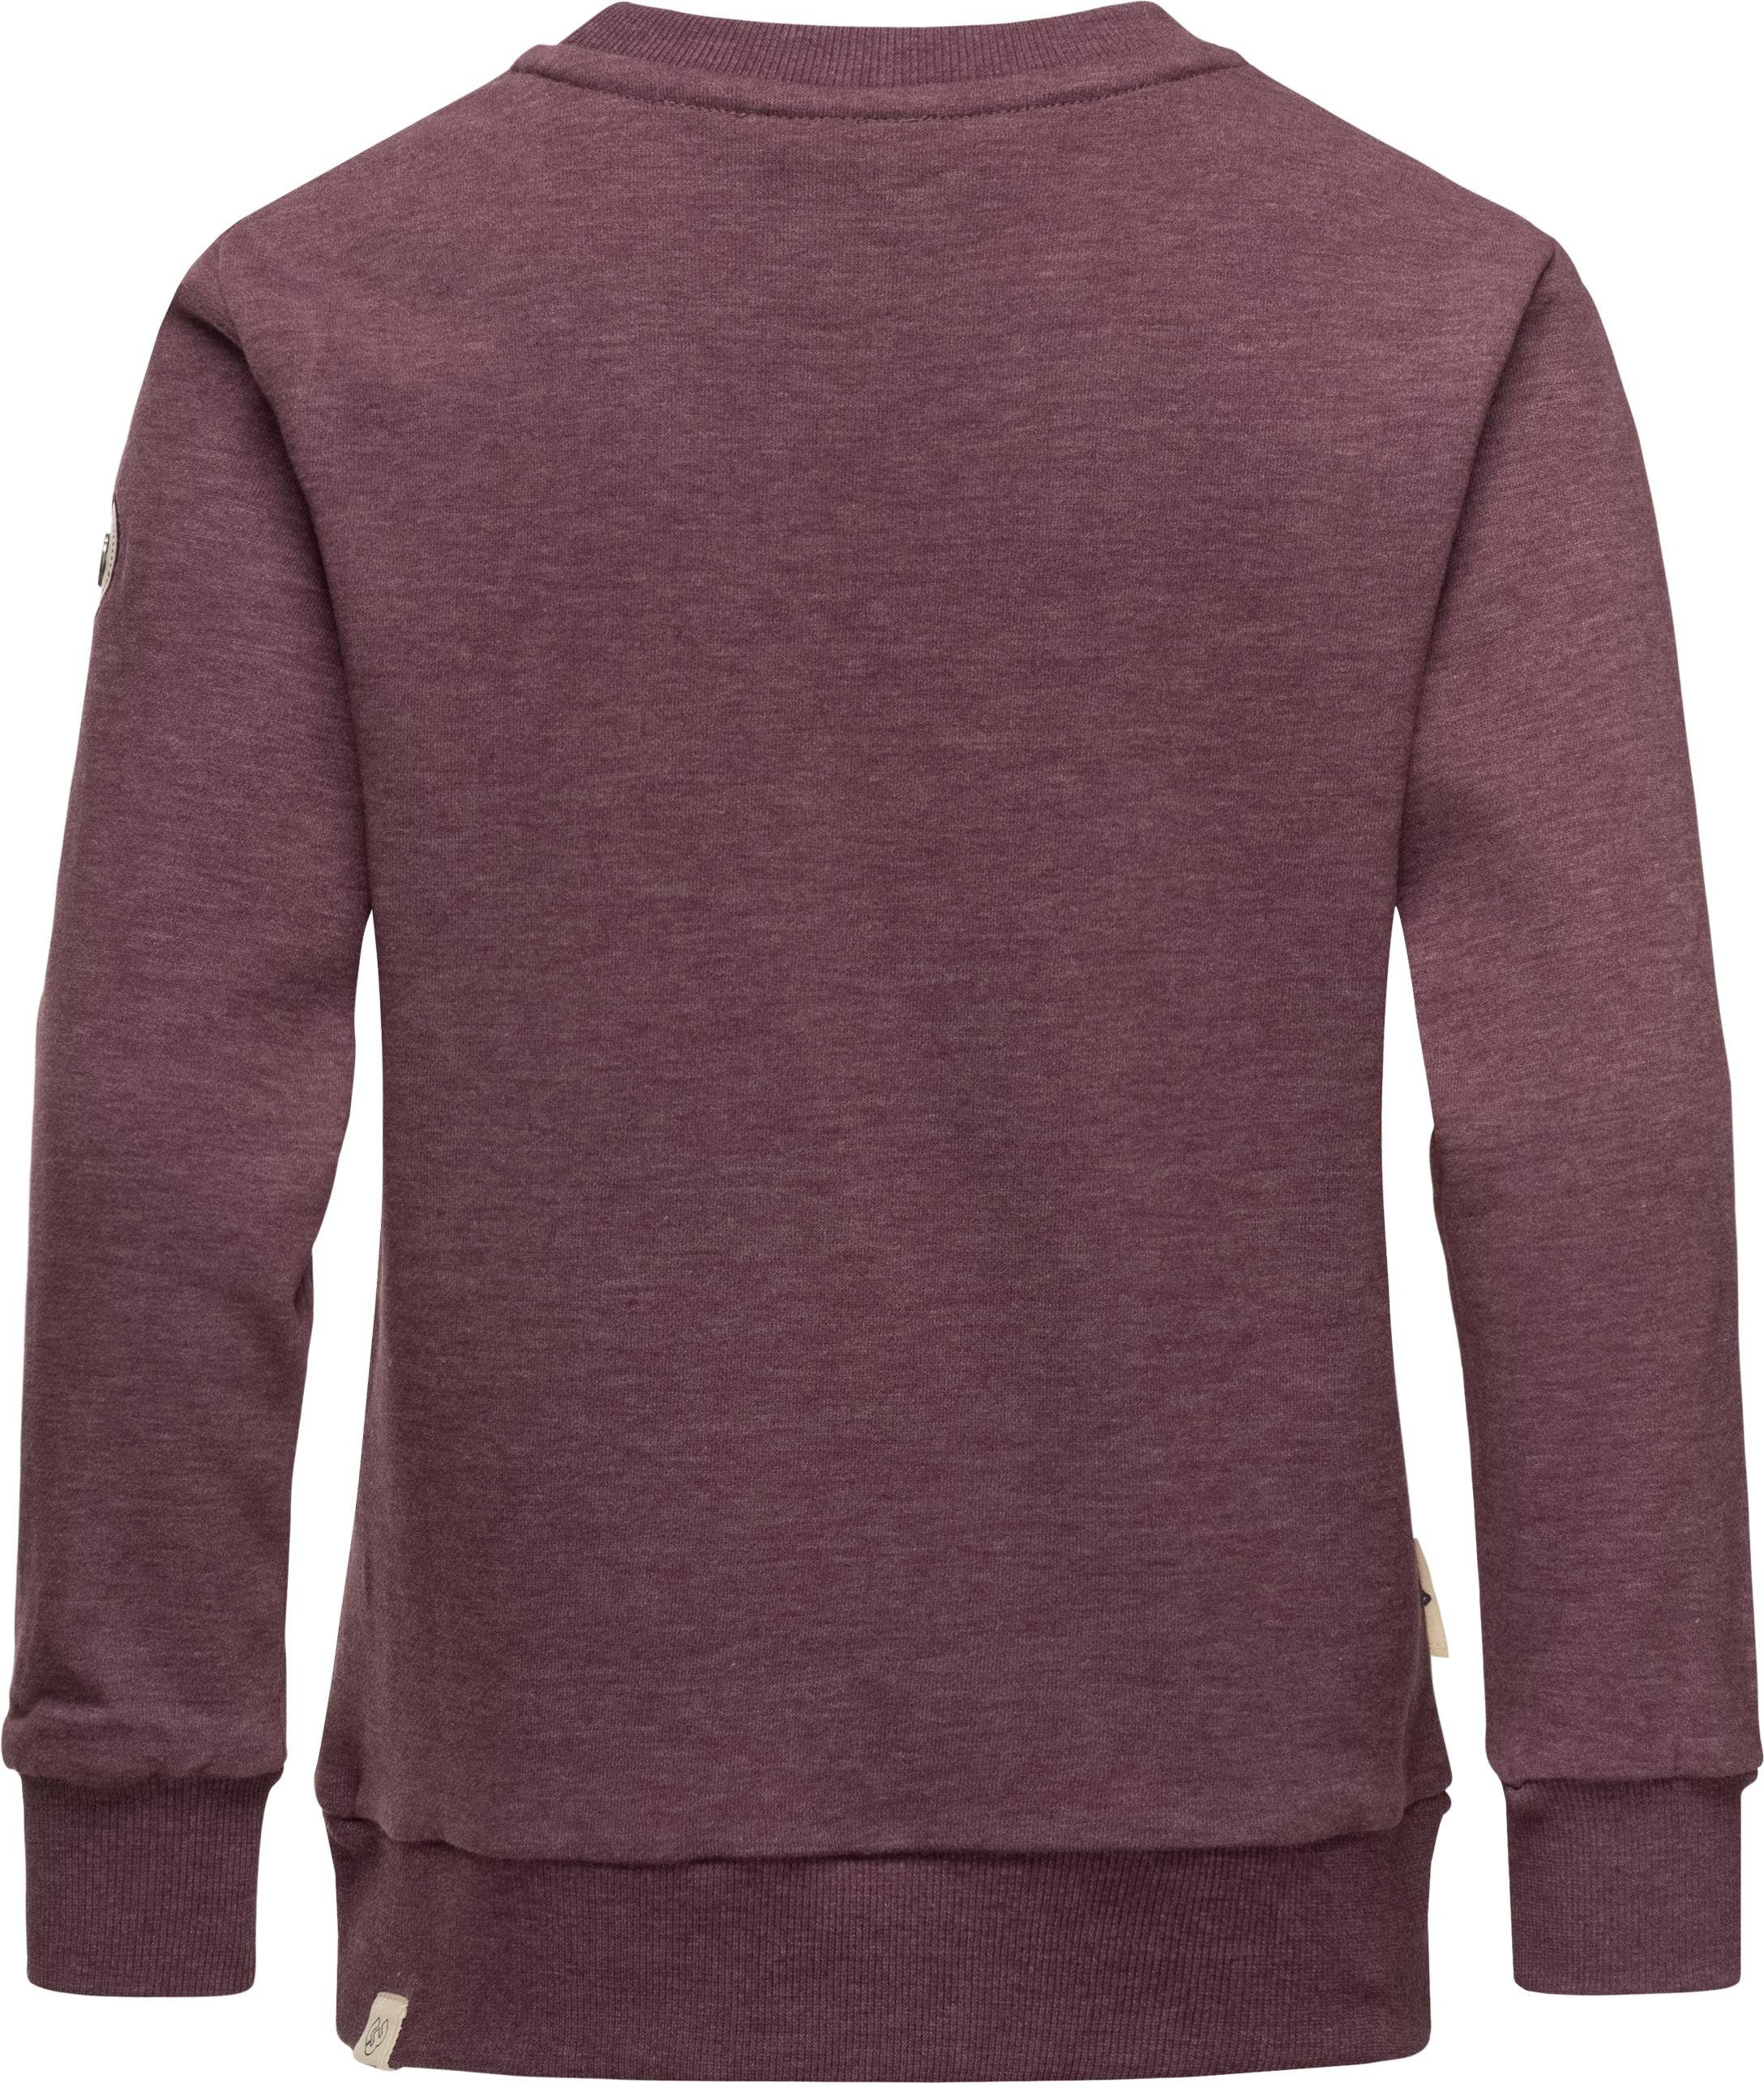 pflaume Sweater Sweatshirt Ragwear Print mit coolem Mädchen Print Evka Organic stylisches